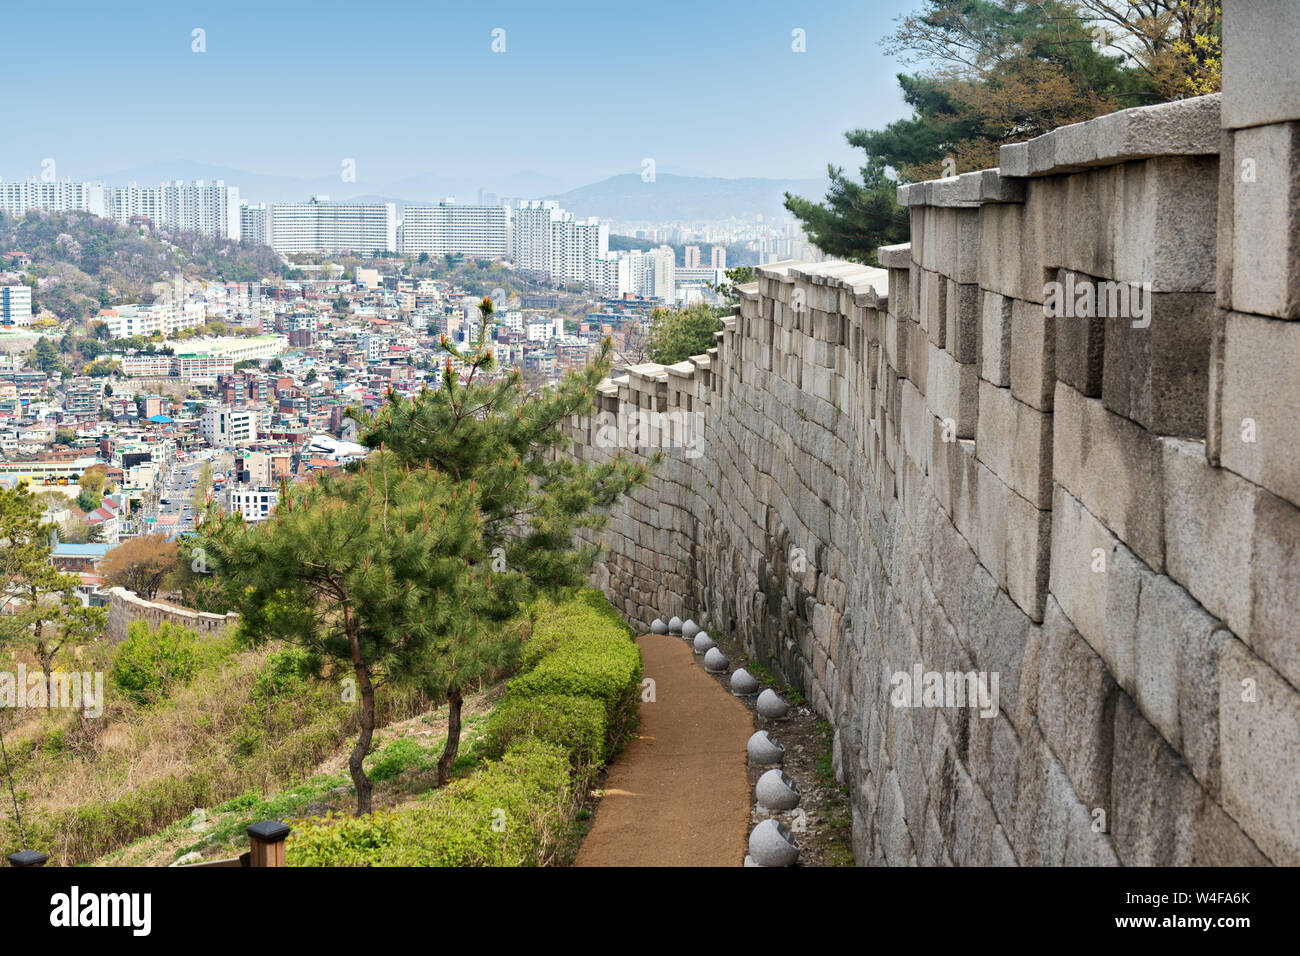 Hanyangdoseongr,l'Seoul City Wall è una serie di pareti di pietra, legno e altri materiali, costruito nel 1396 per proteggere la città contro gli invasori, Foto Stock